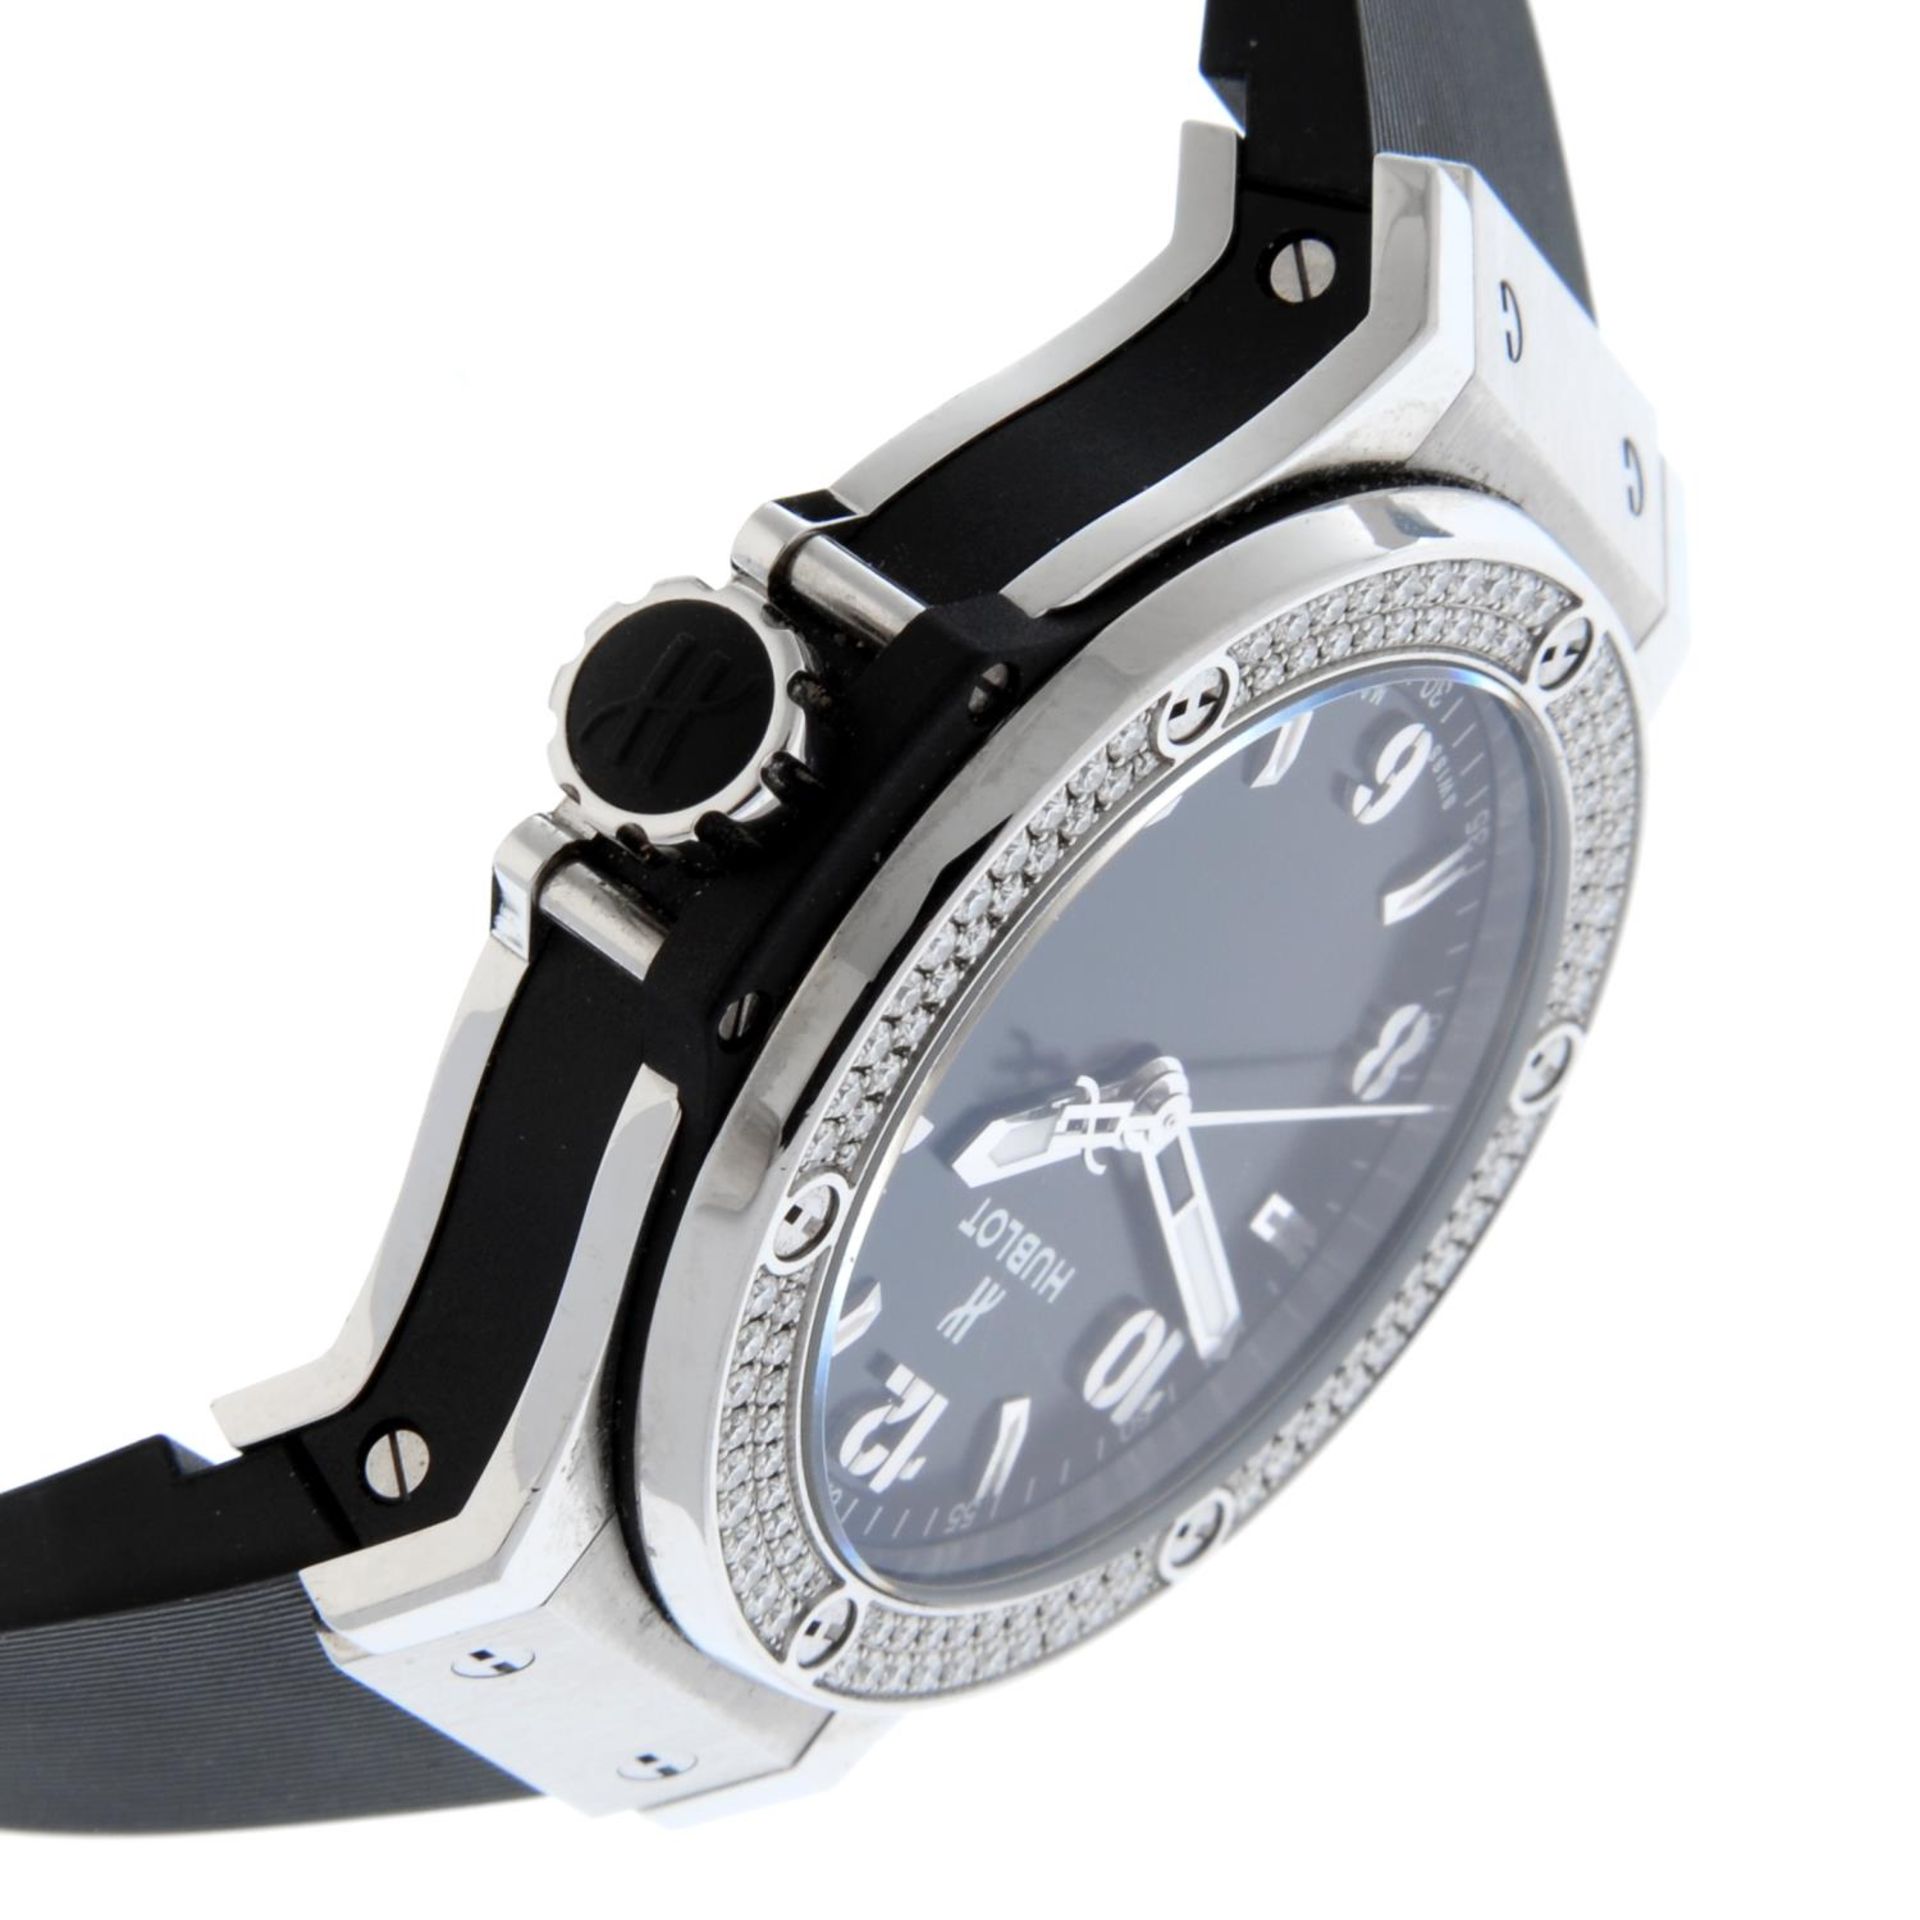 HUBLOT - a Big Bang wrist watch. - Image 4 of 6